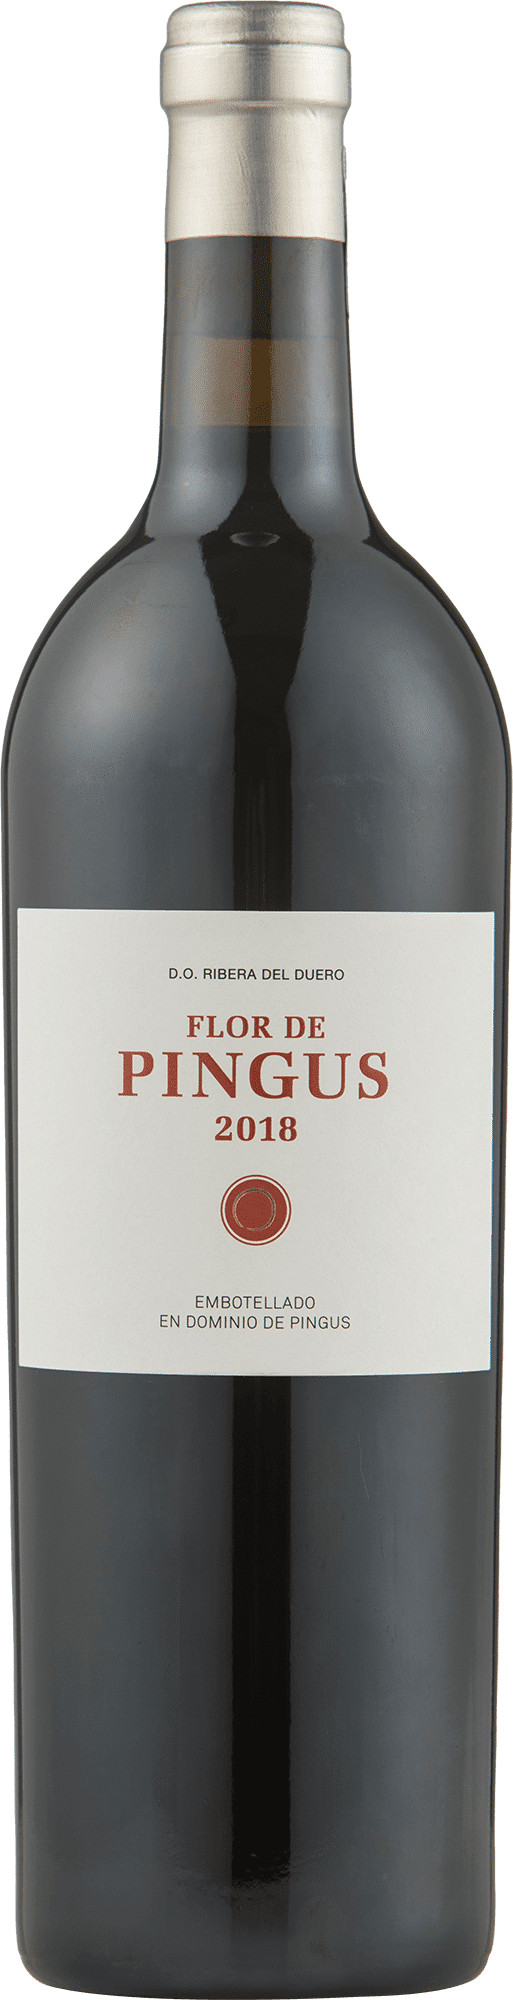 Dominio de Pingus Flor de Pingus 2018